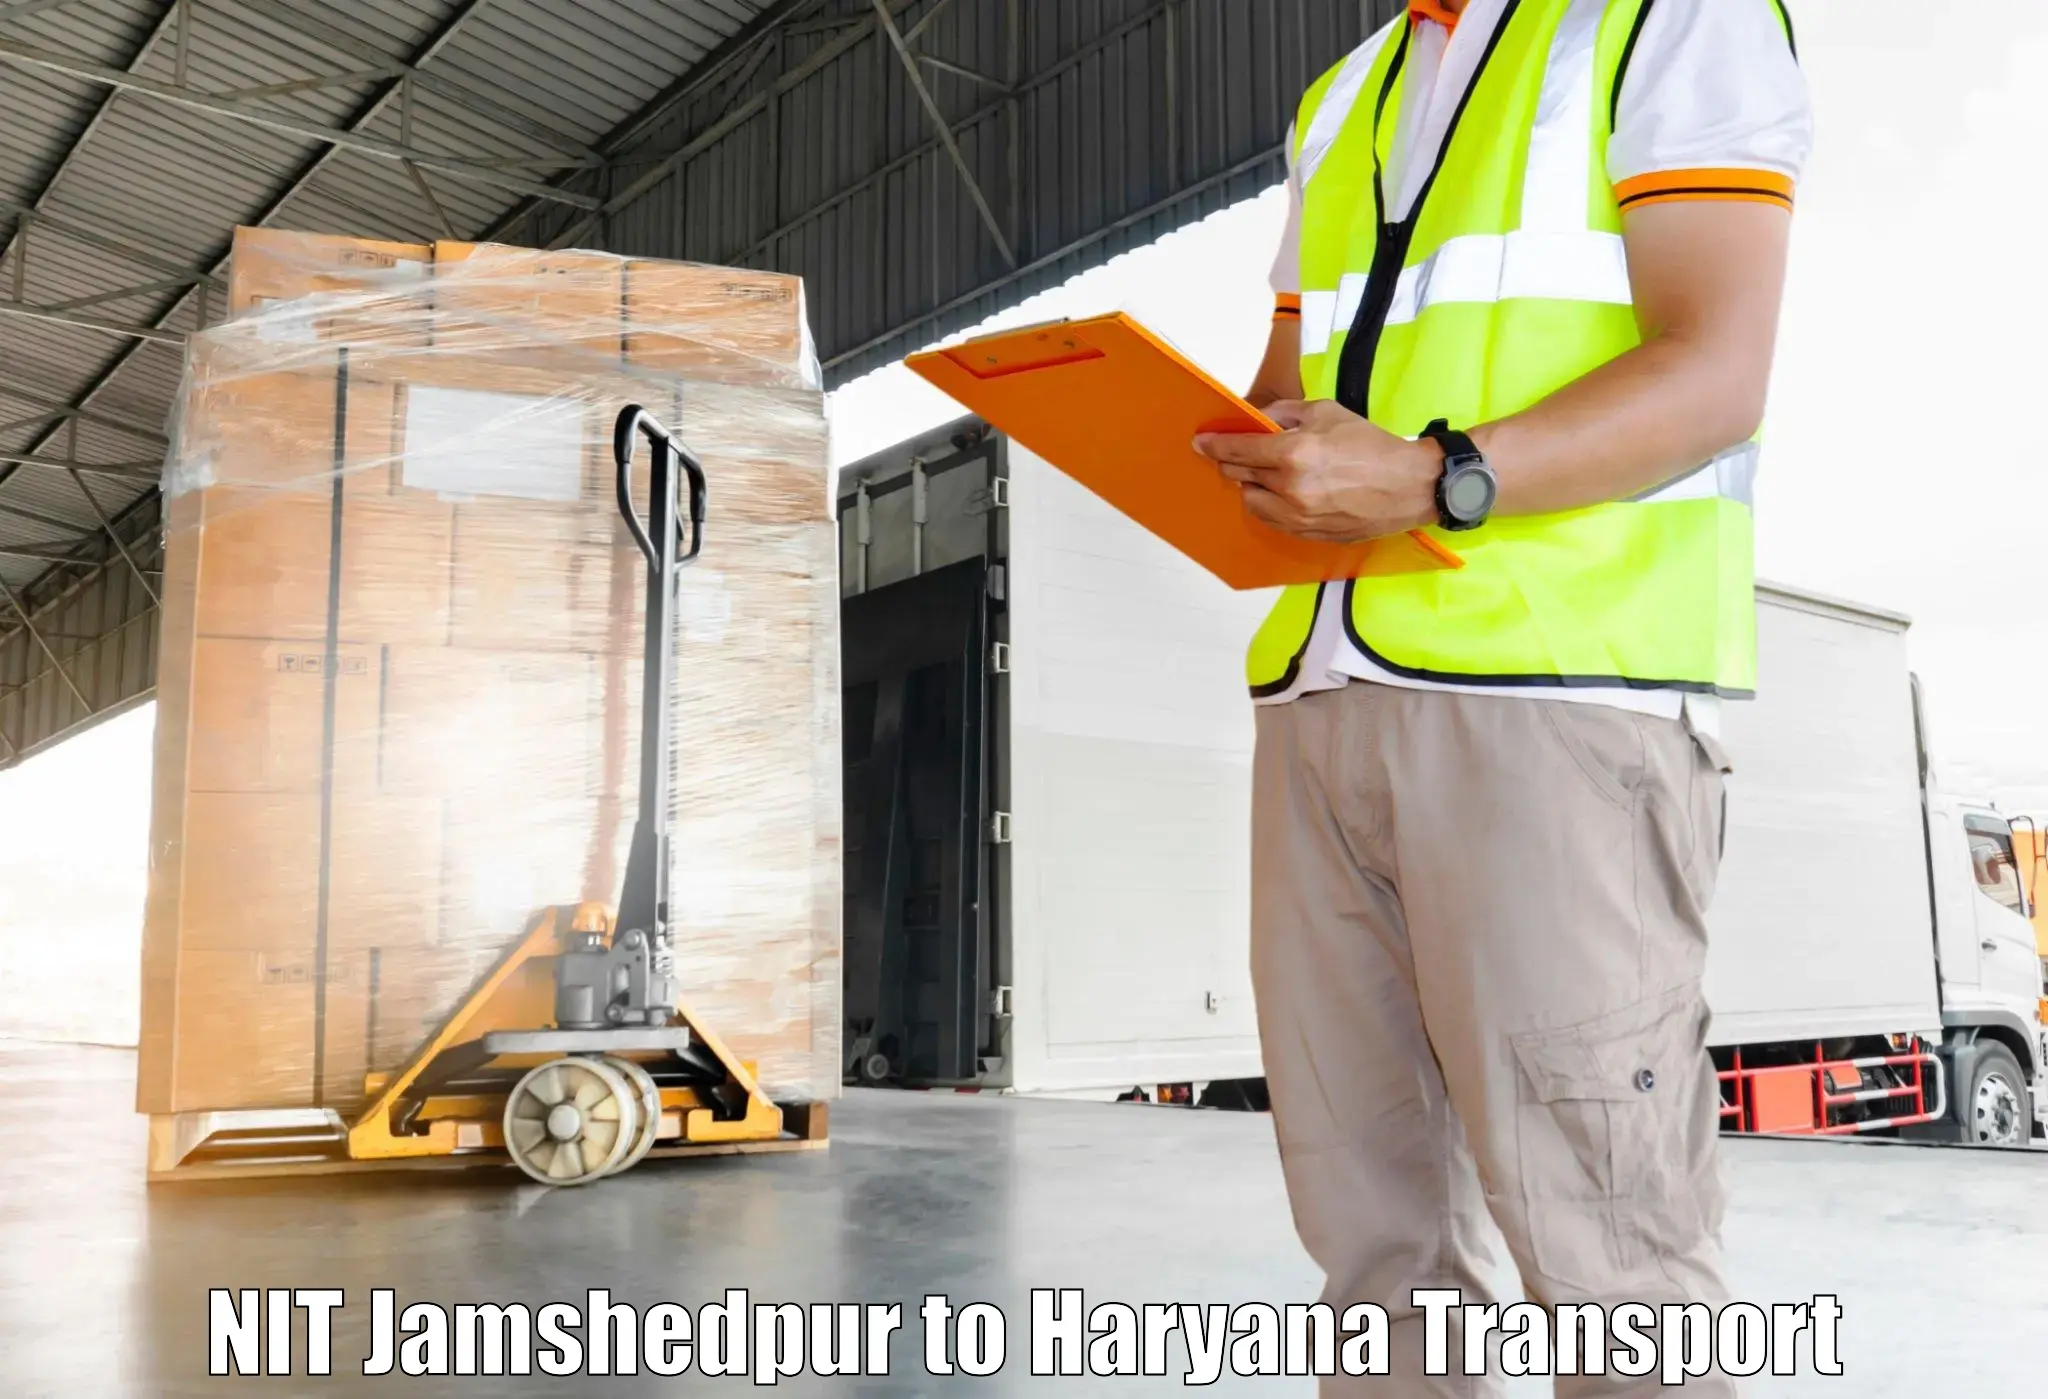 Transport shared services NIT Jamshedpur to Samalkha